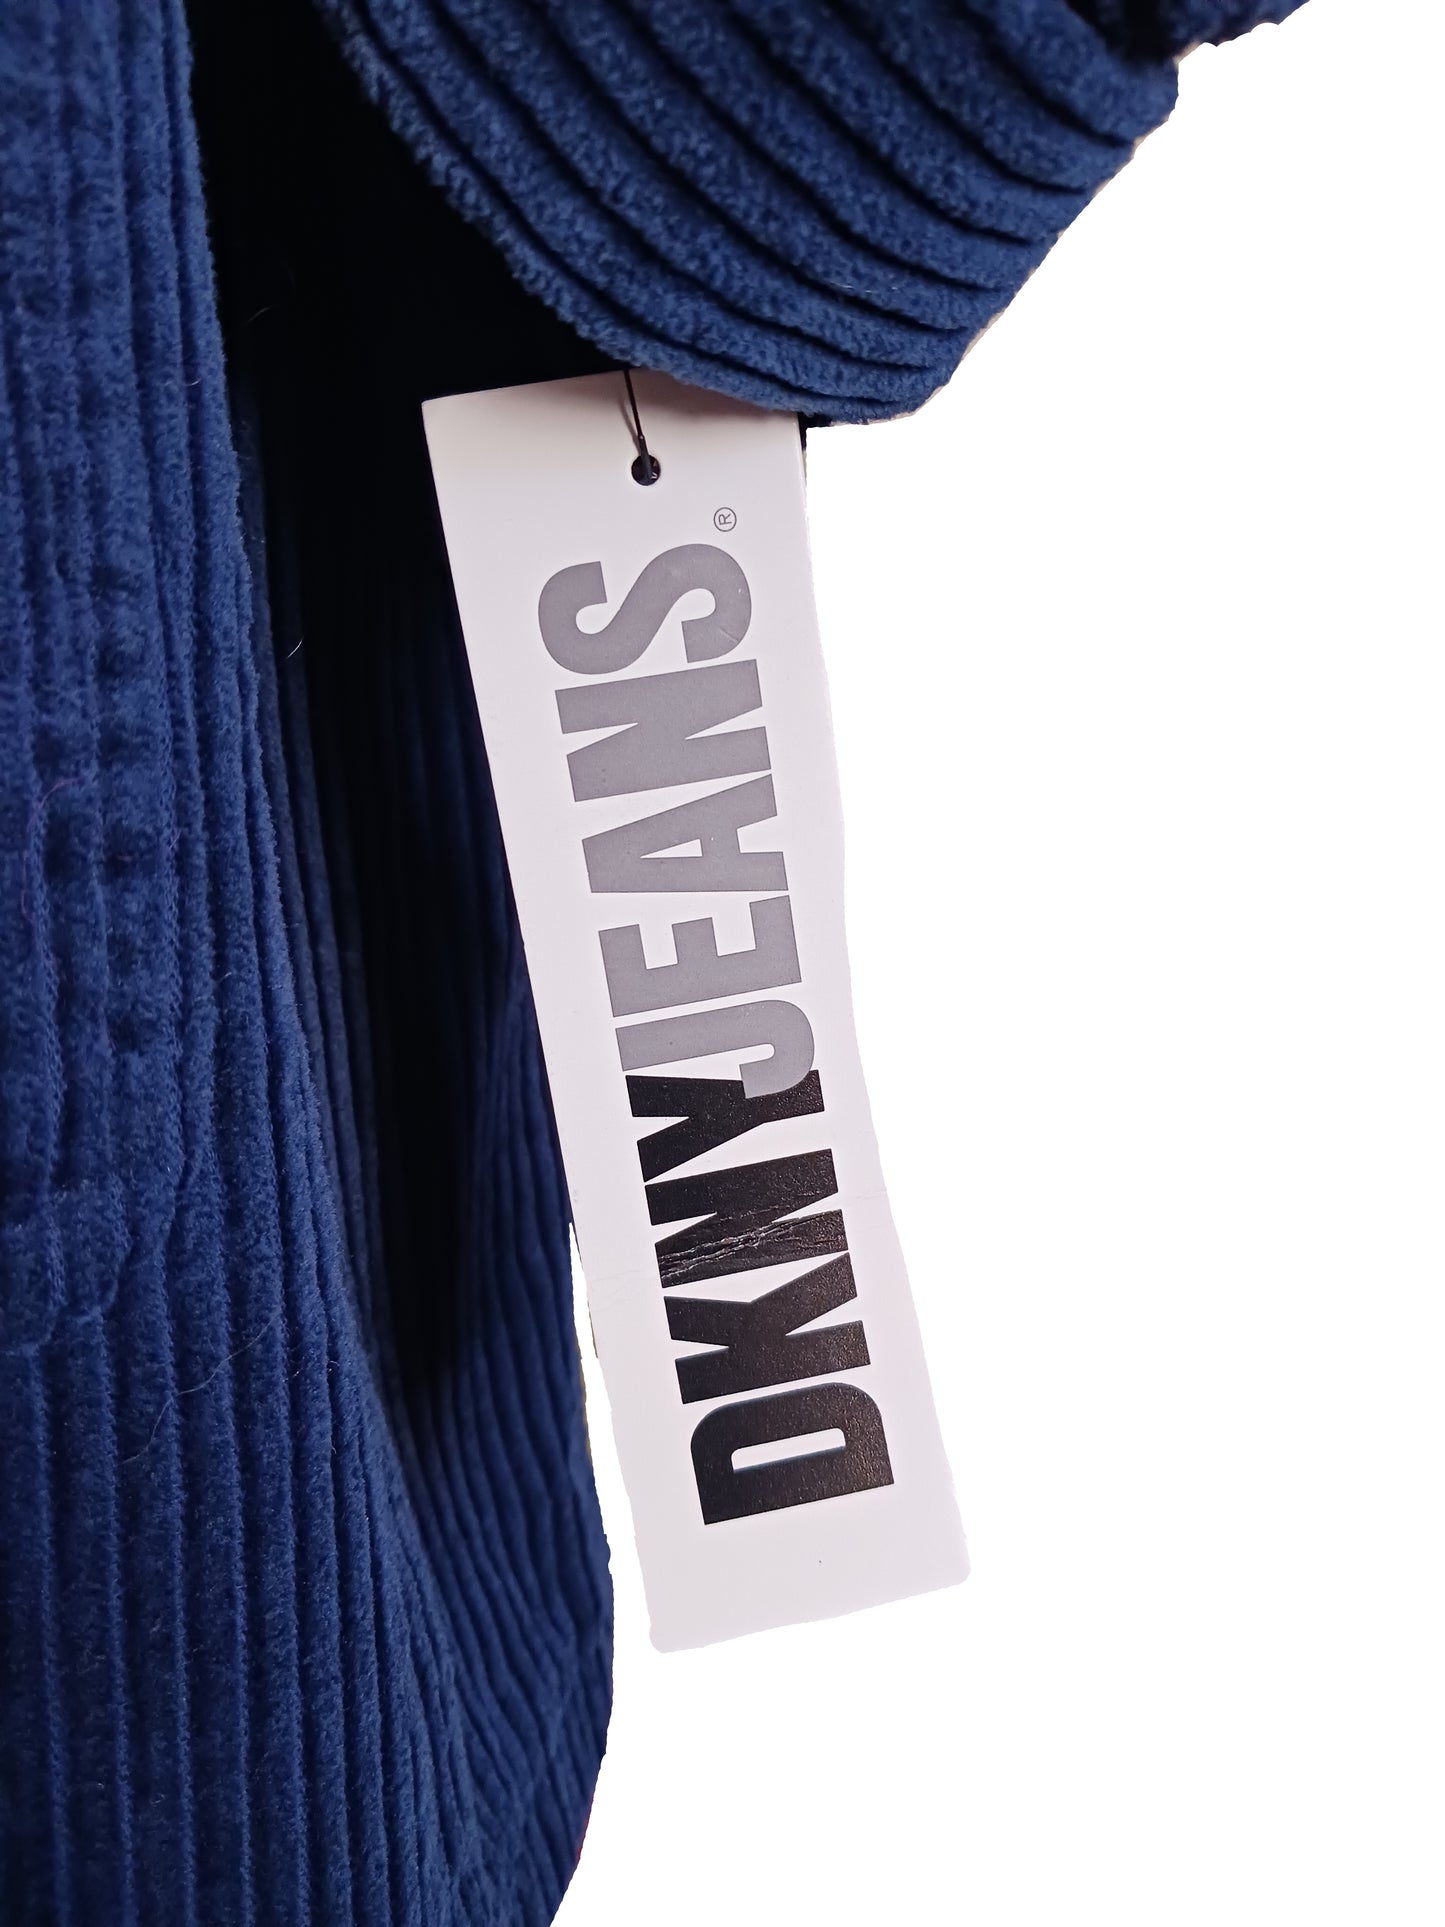 DKNY Jeans Blue Corduroy Coat, Size Medium